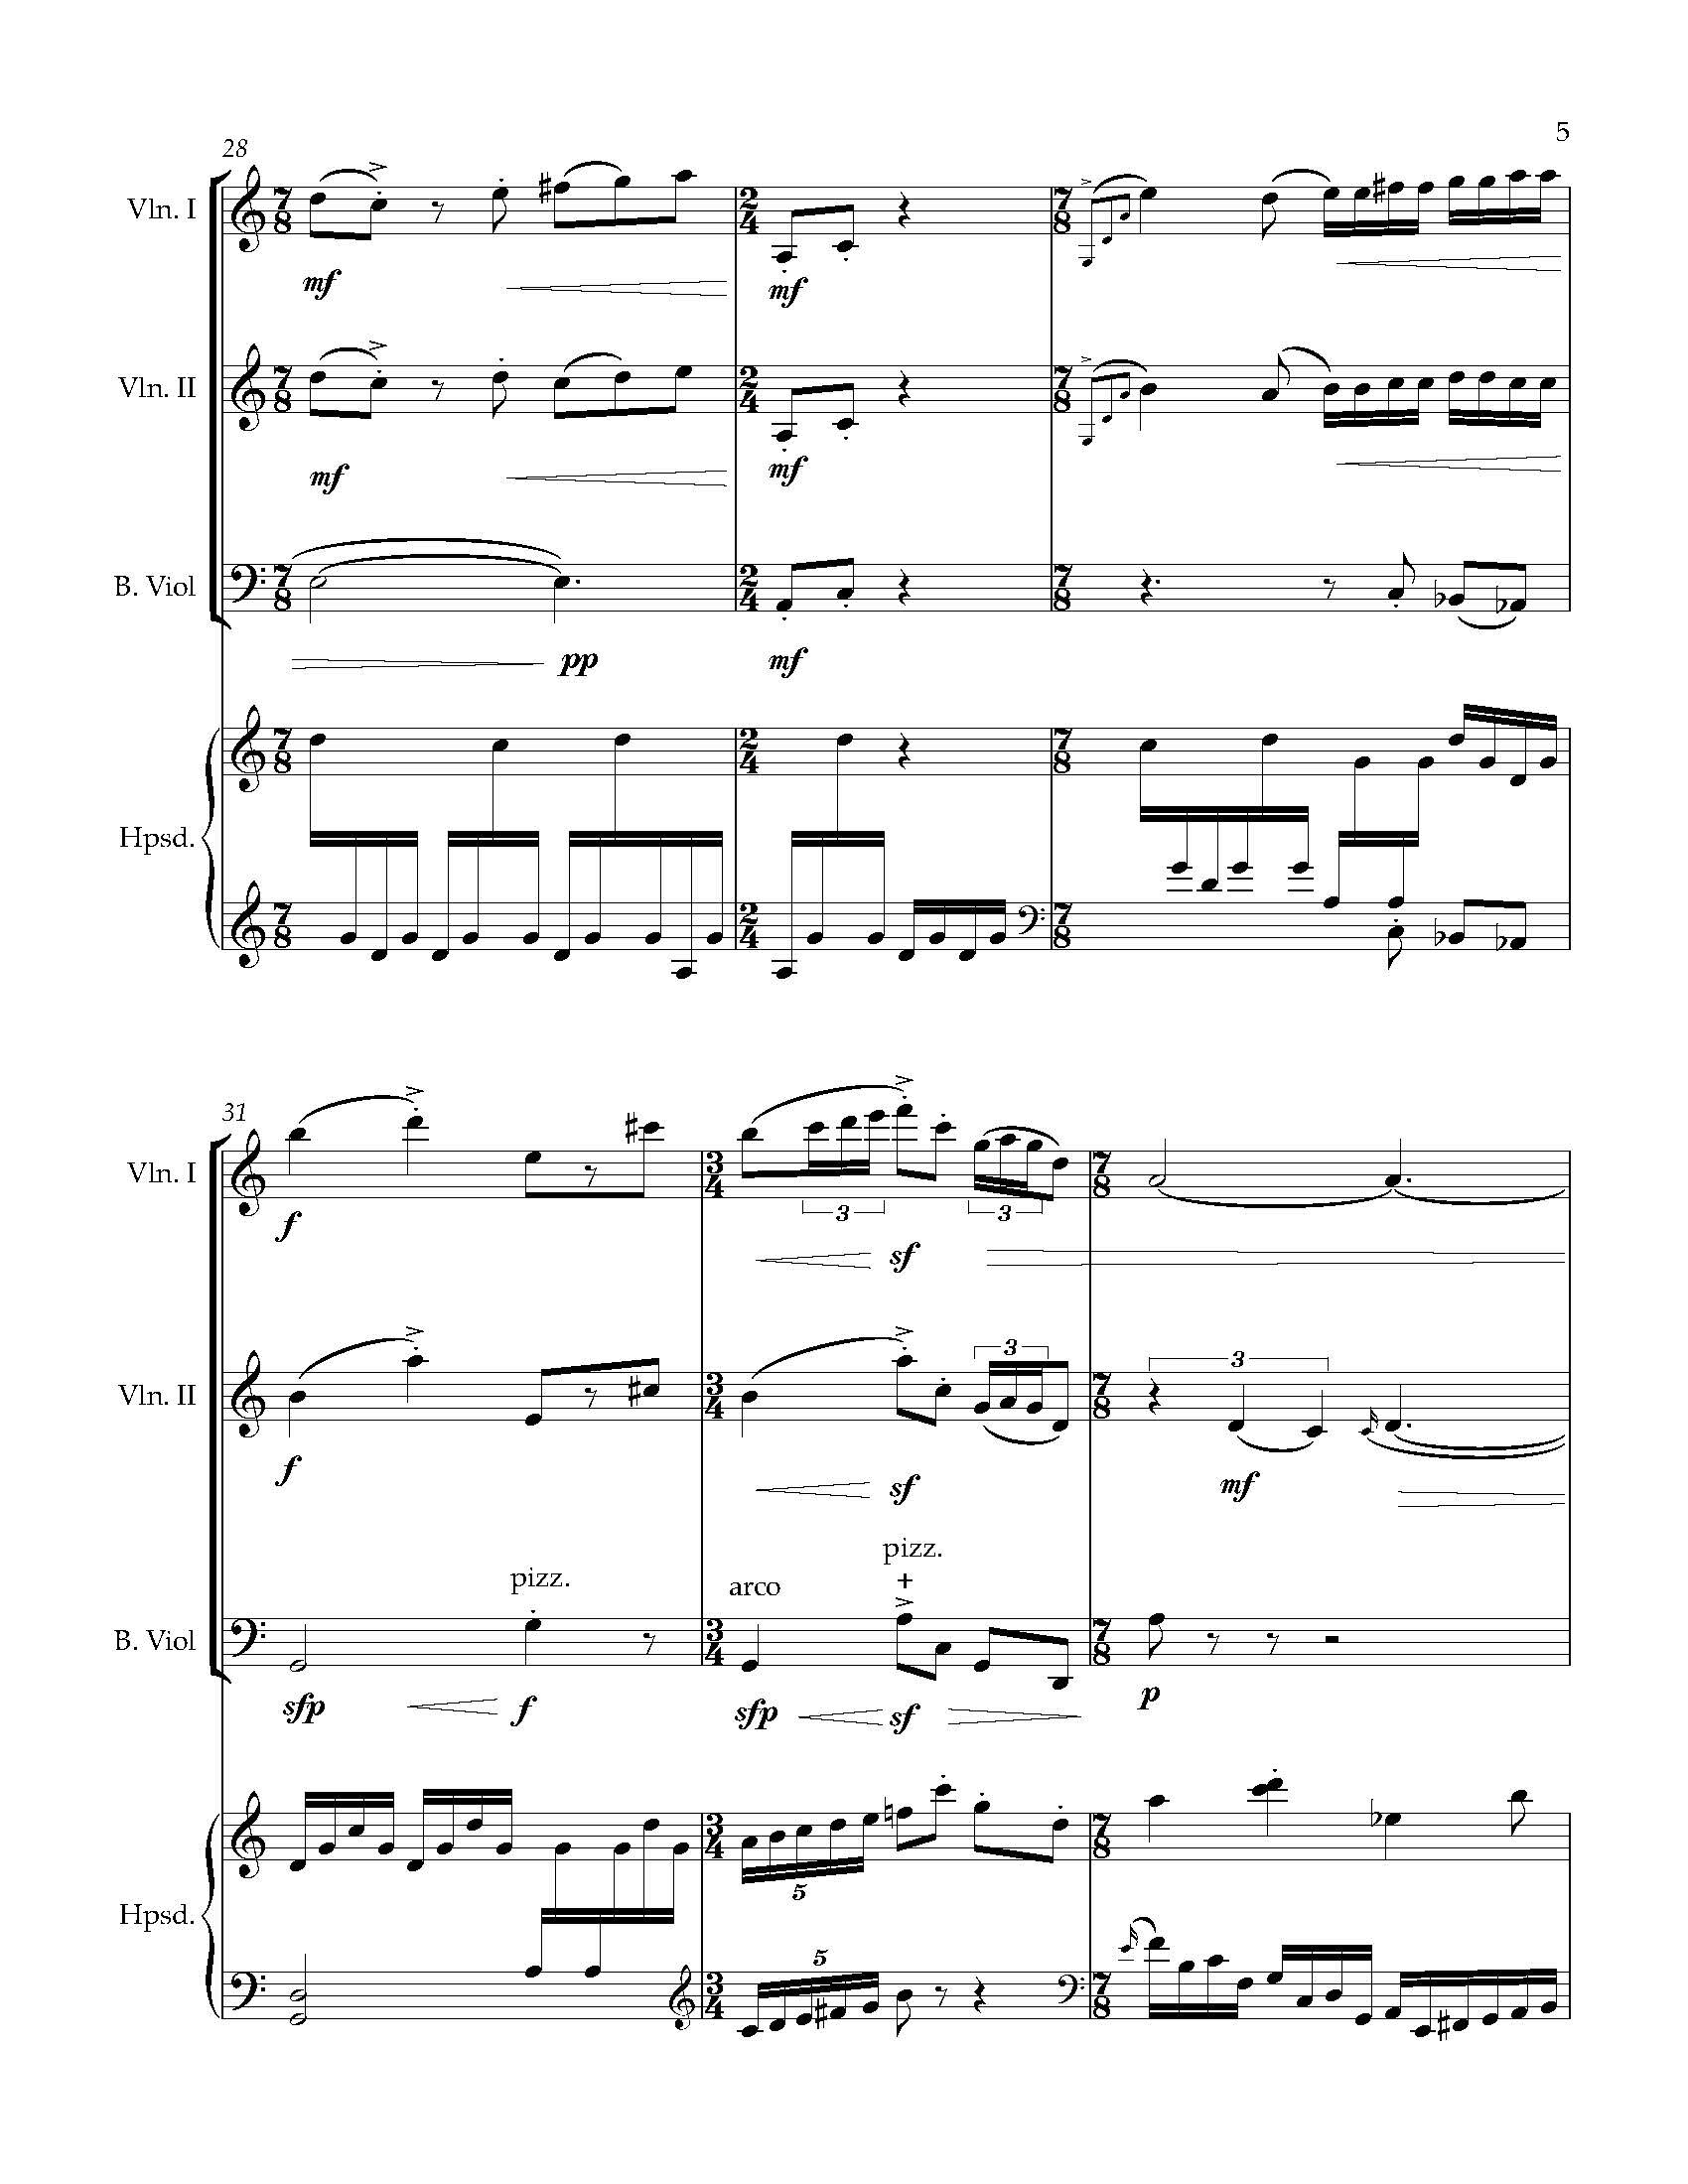 Sonata Sonare - Complete Score_Page_11.jpg